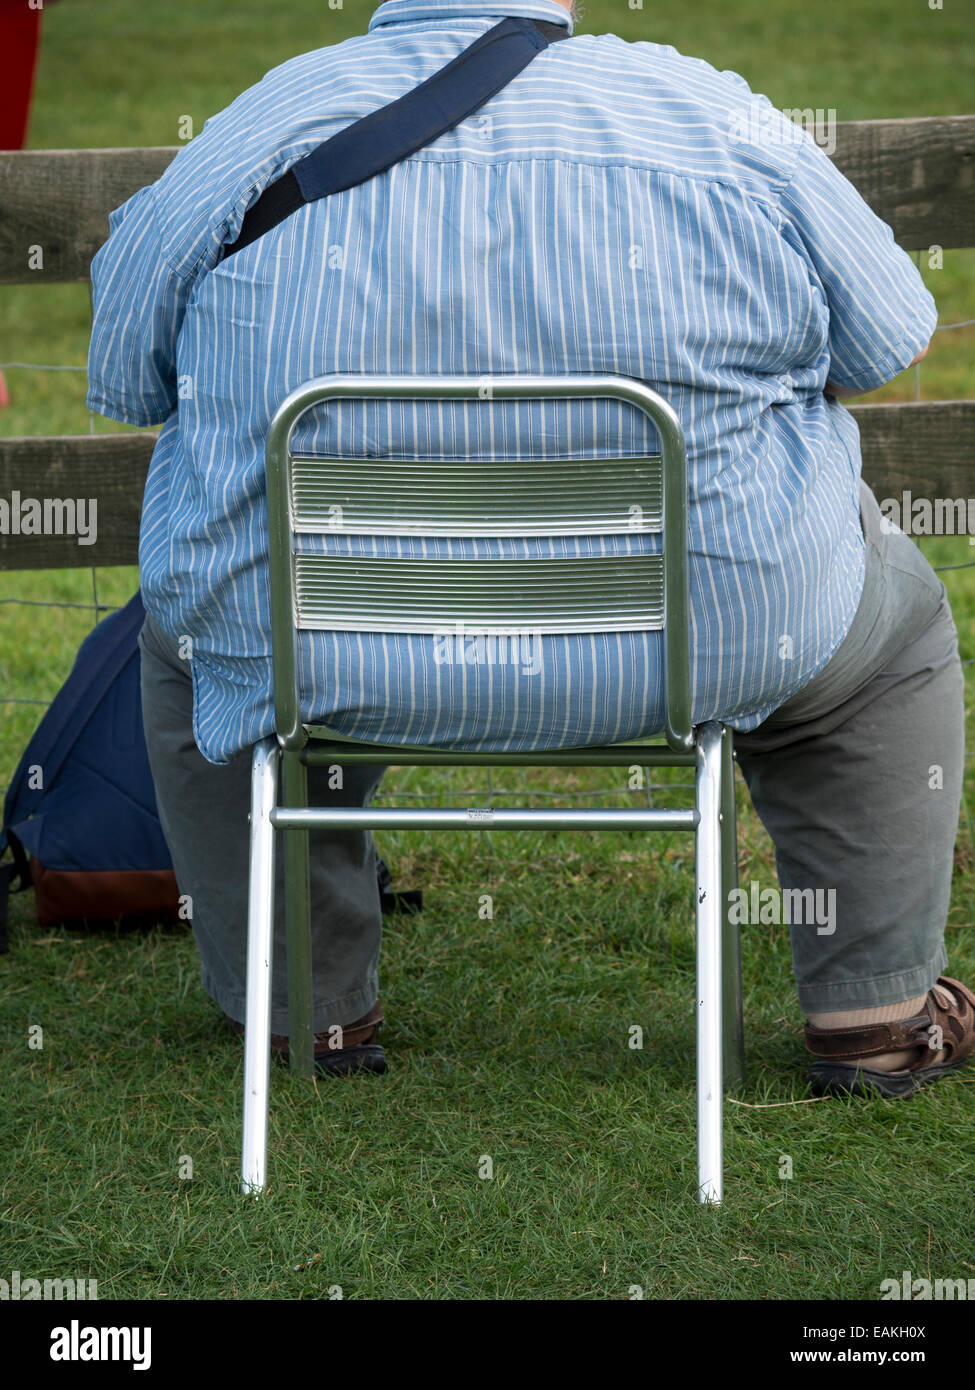 Obesi uomo seduto su una sedia di piccole dimensioni Foto Stock